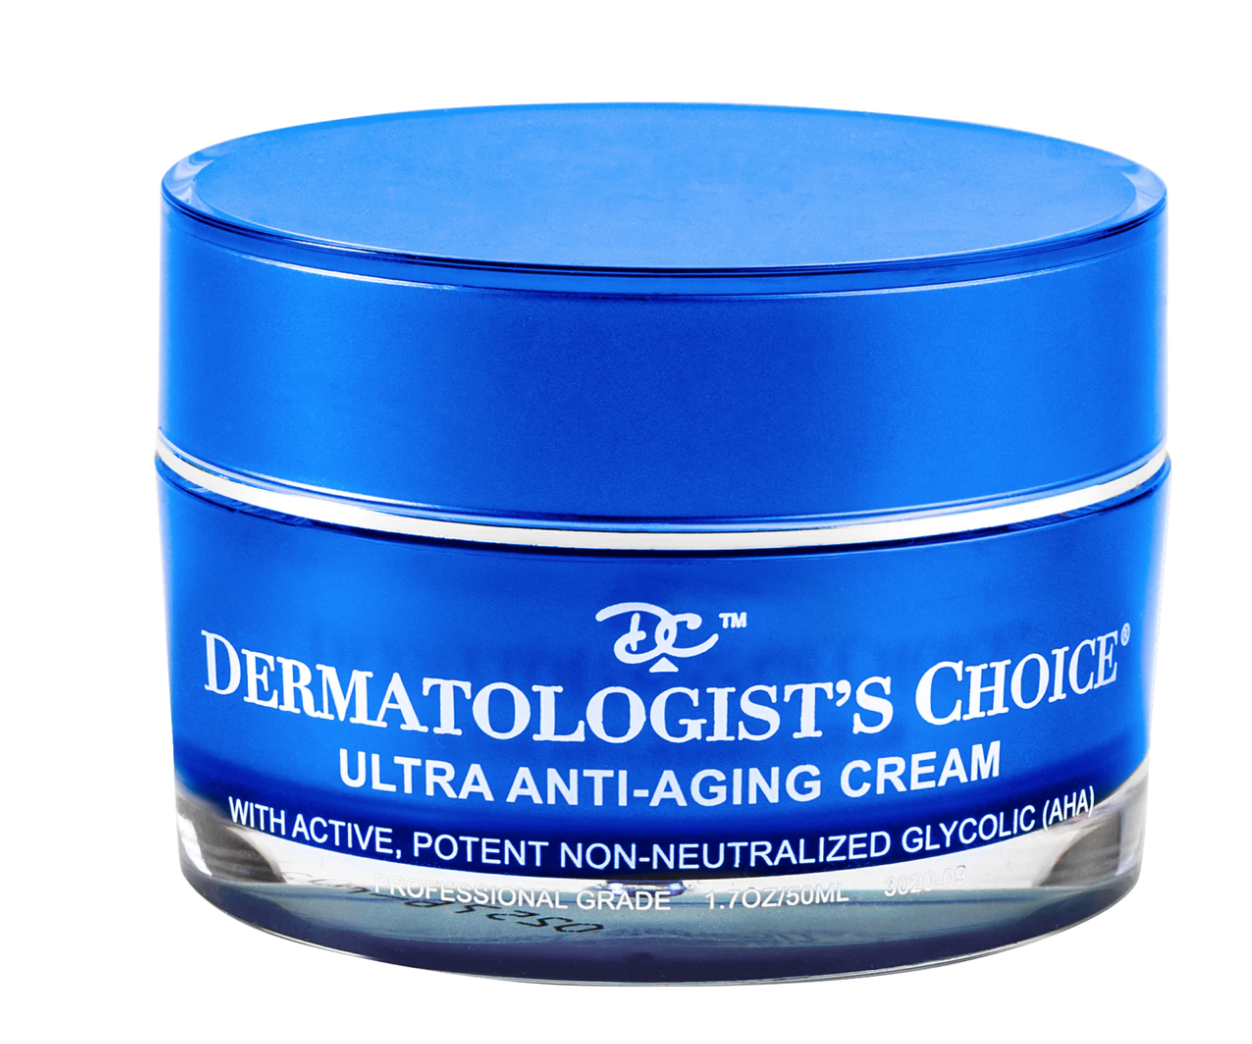 Dermatologist's Choice Ultra Anti-Aging Cream, potente ácido glicólico